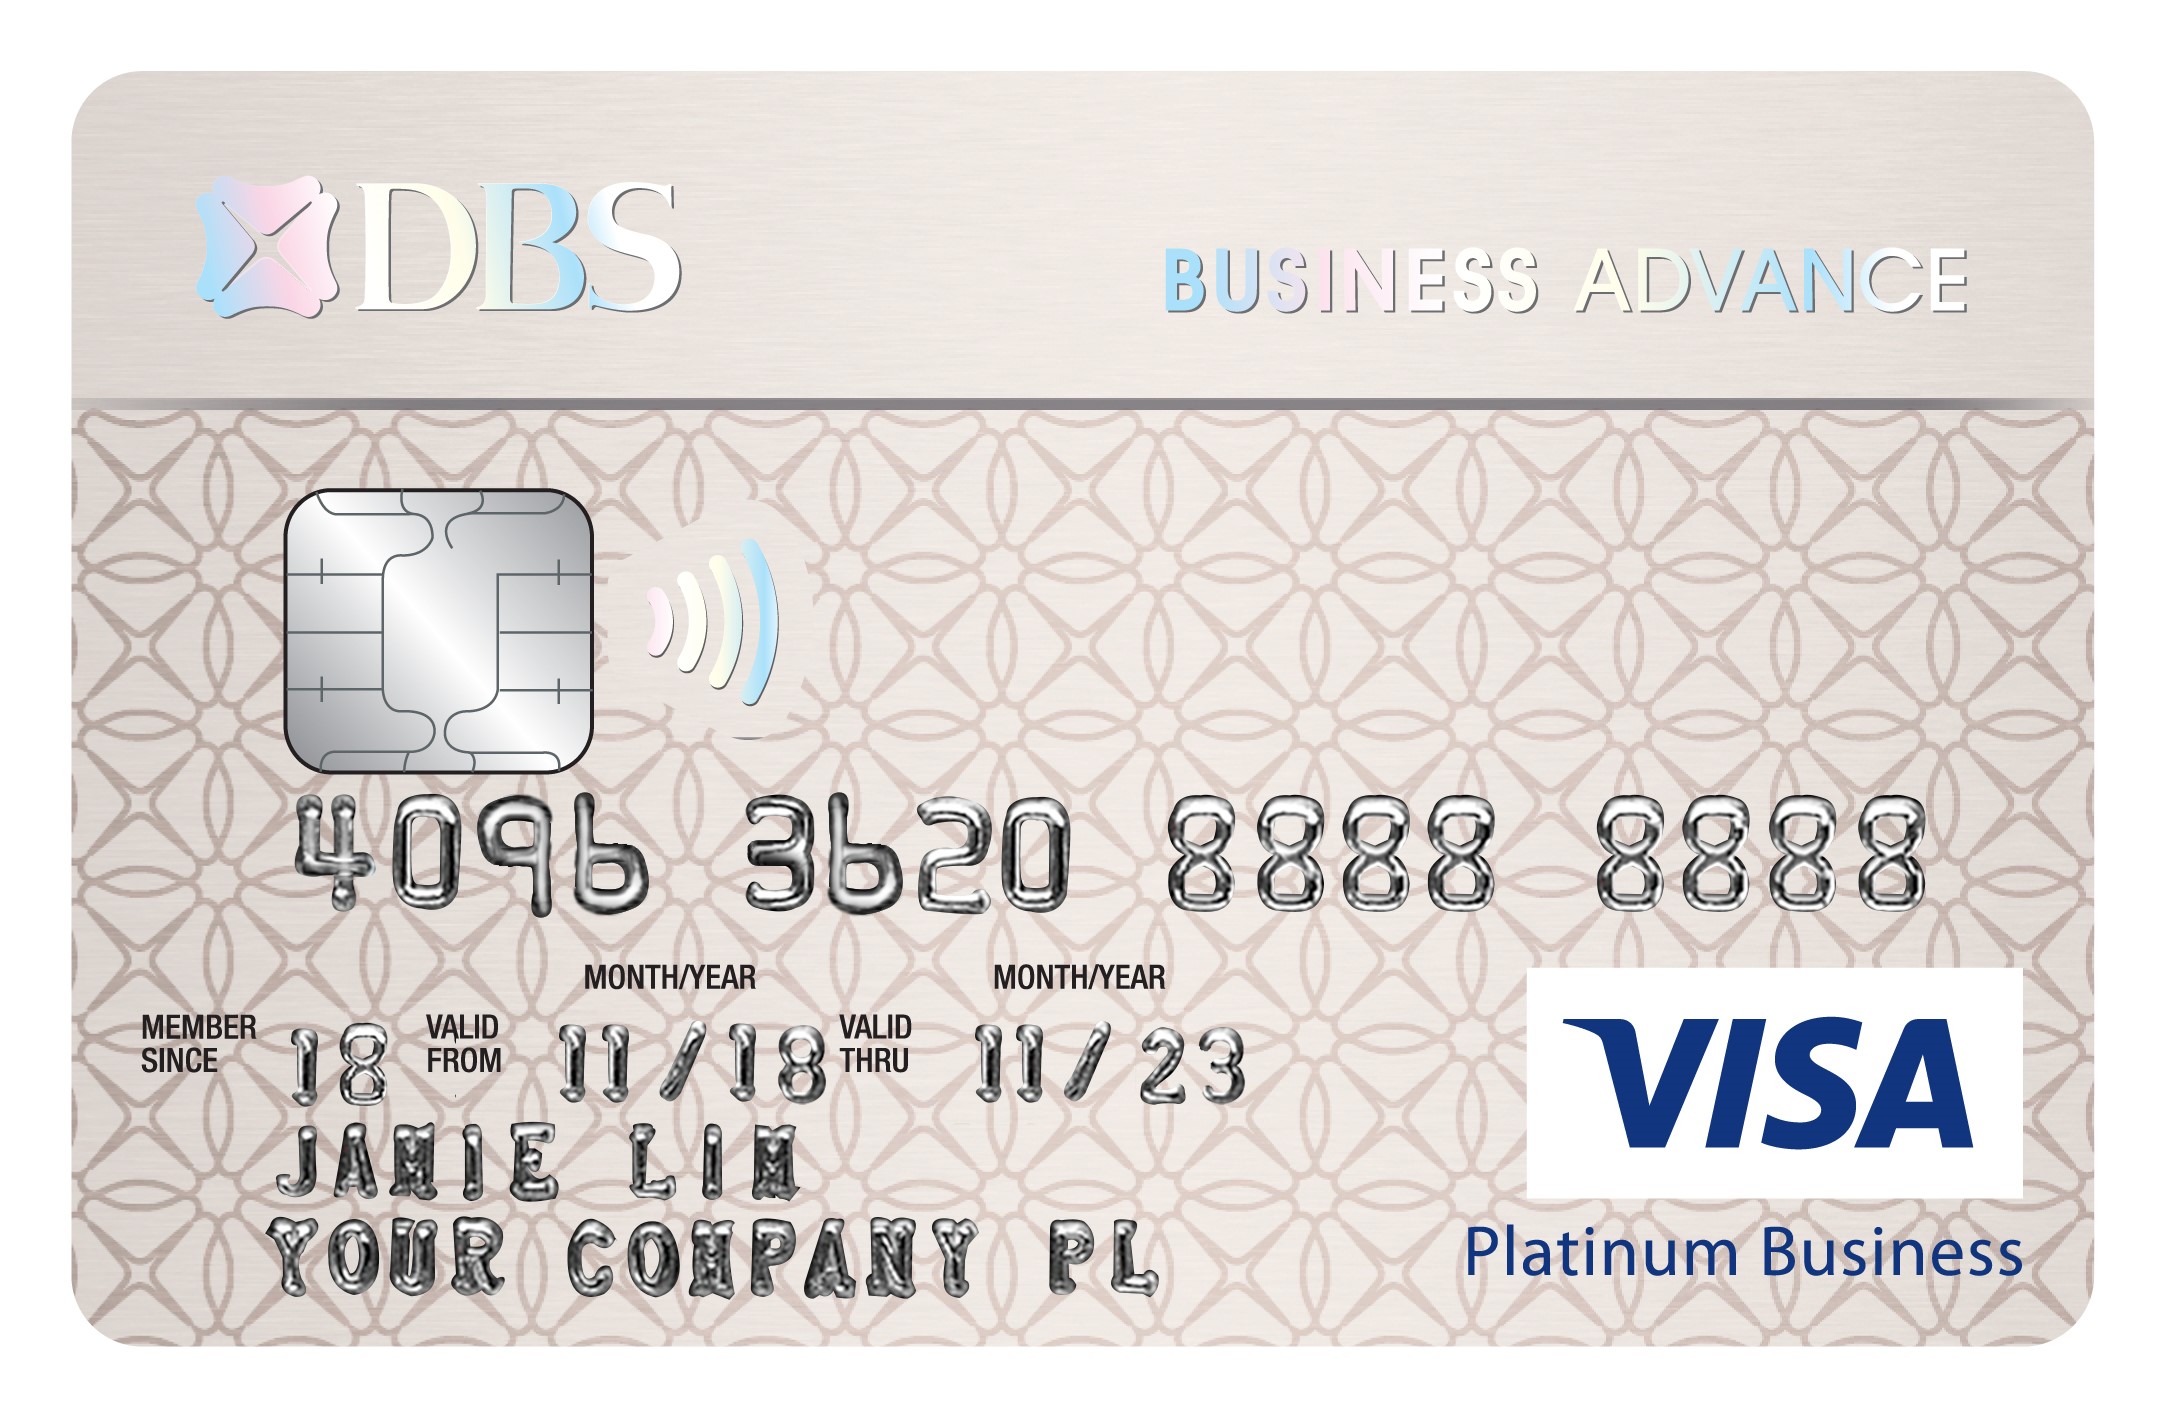 DBS Business Advance Debit Card